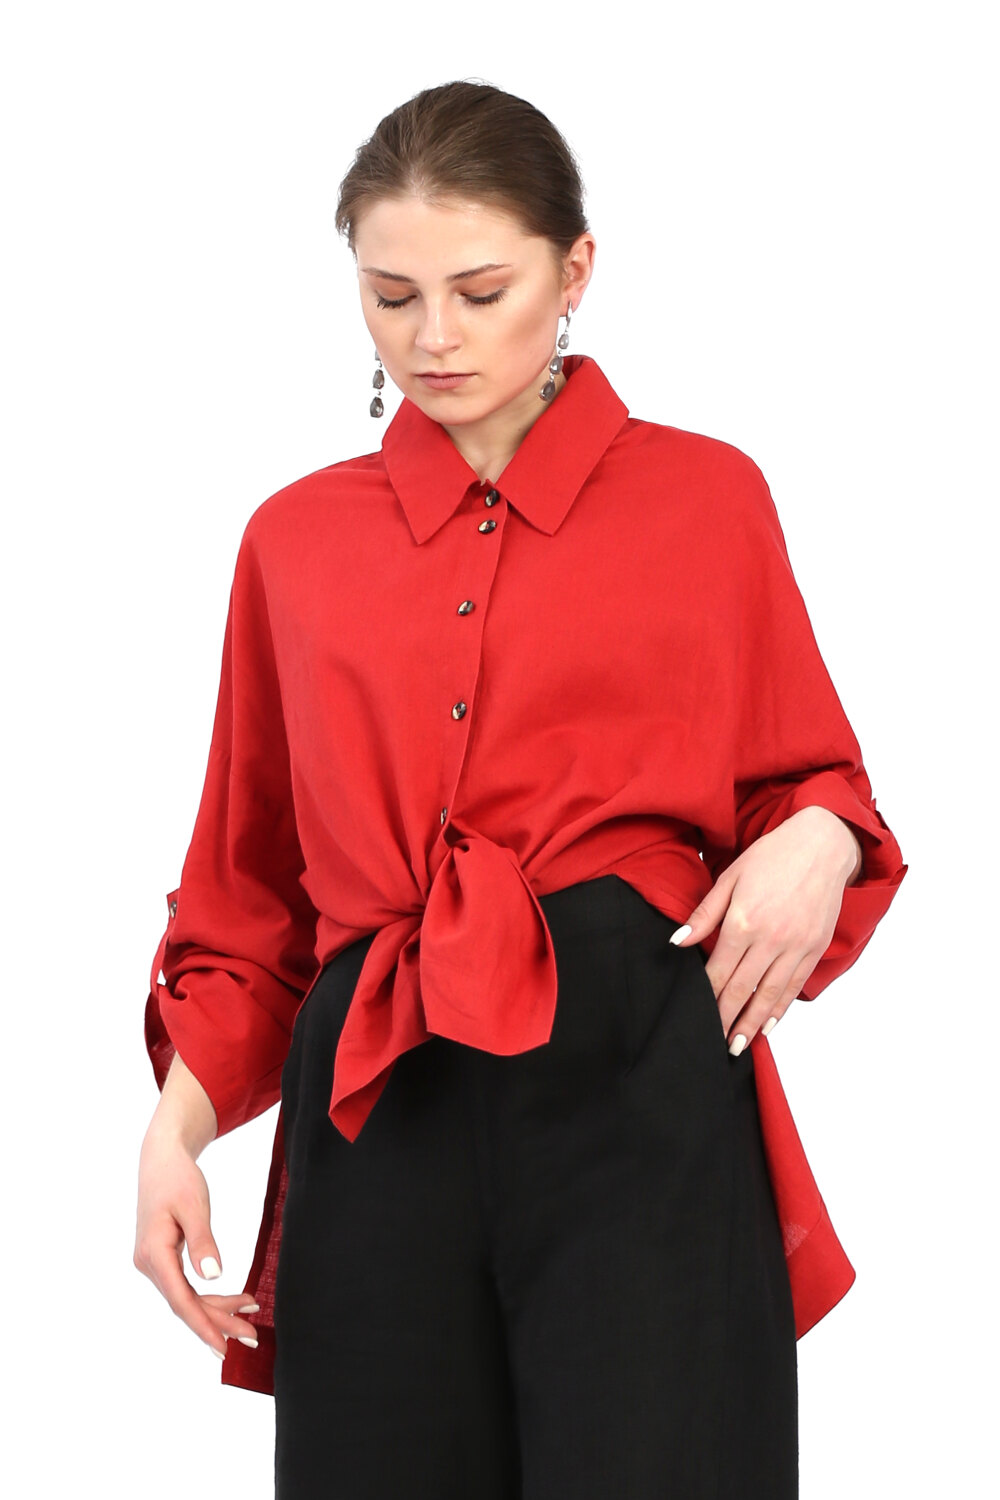 Блузка женская "Классика" модель 105К/1 красная